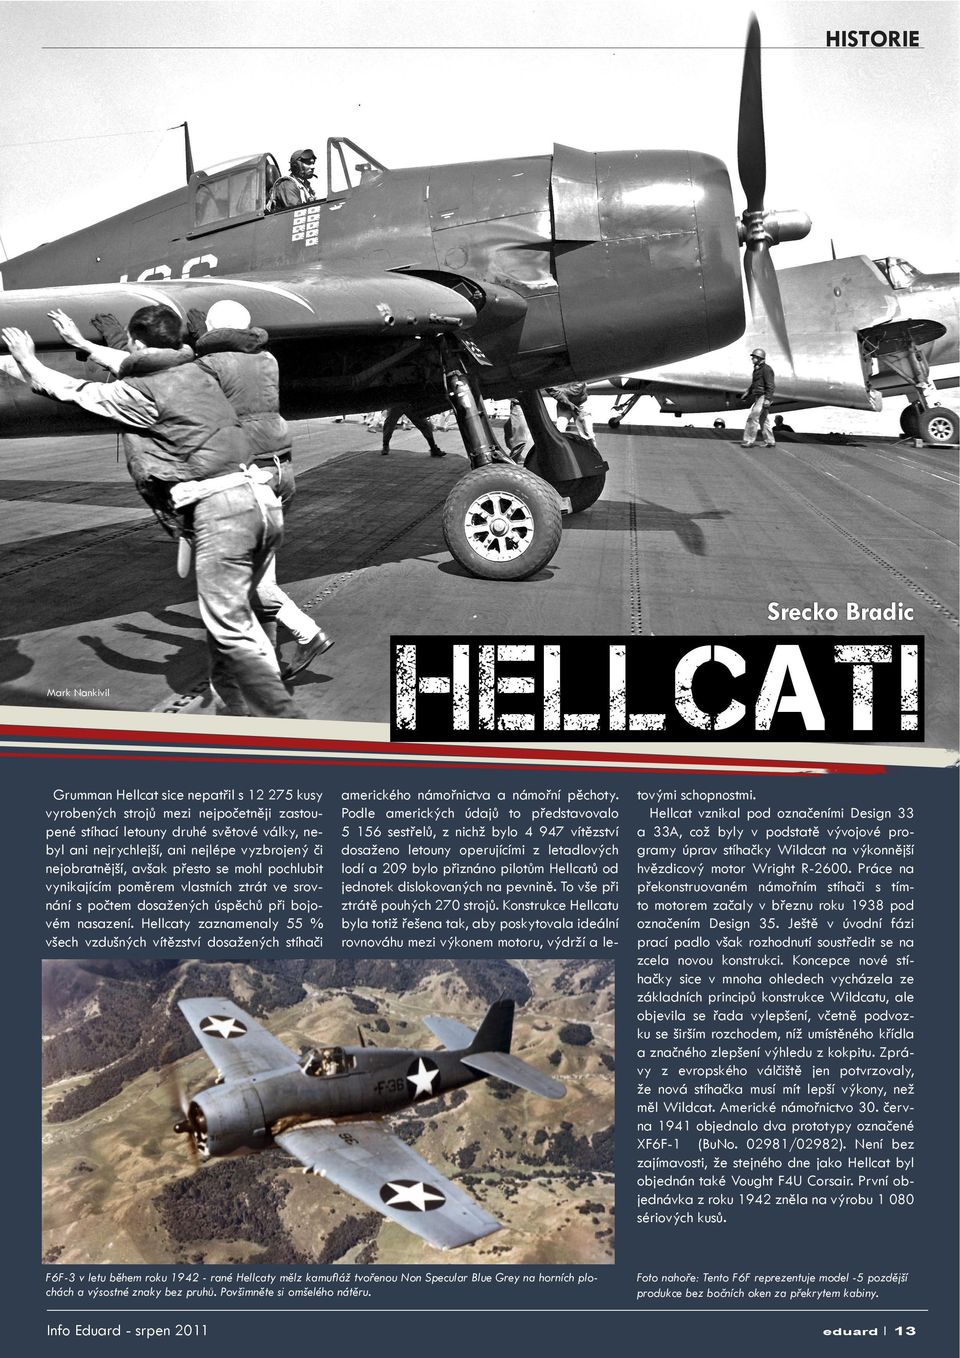 Hellcaty zaznamenaly 55 % všech vzdušných vítězství dosažených stíhači Mark Nankivil amerického námořnictva a námořní pěchoty.